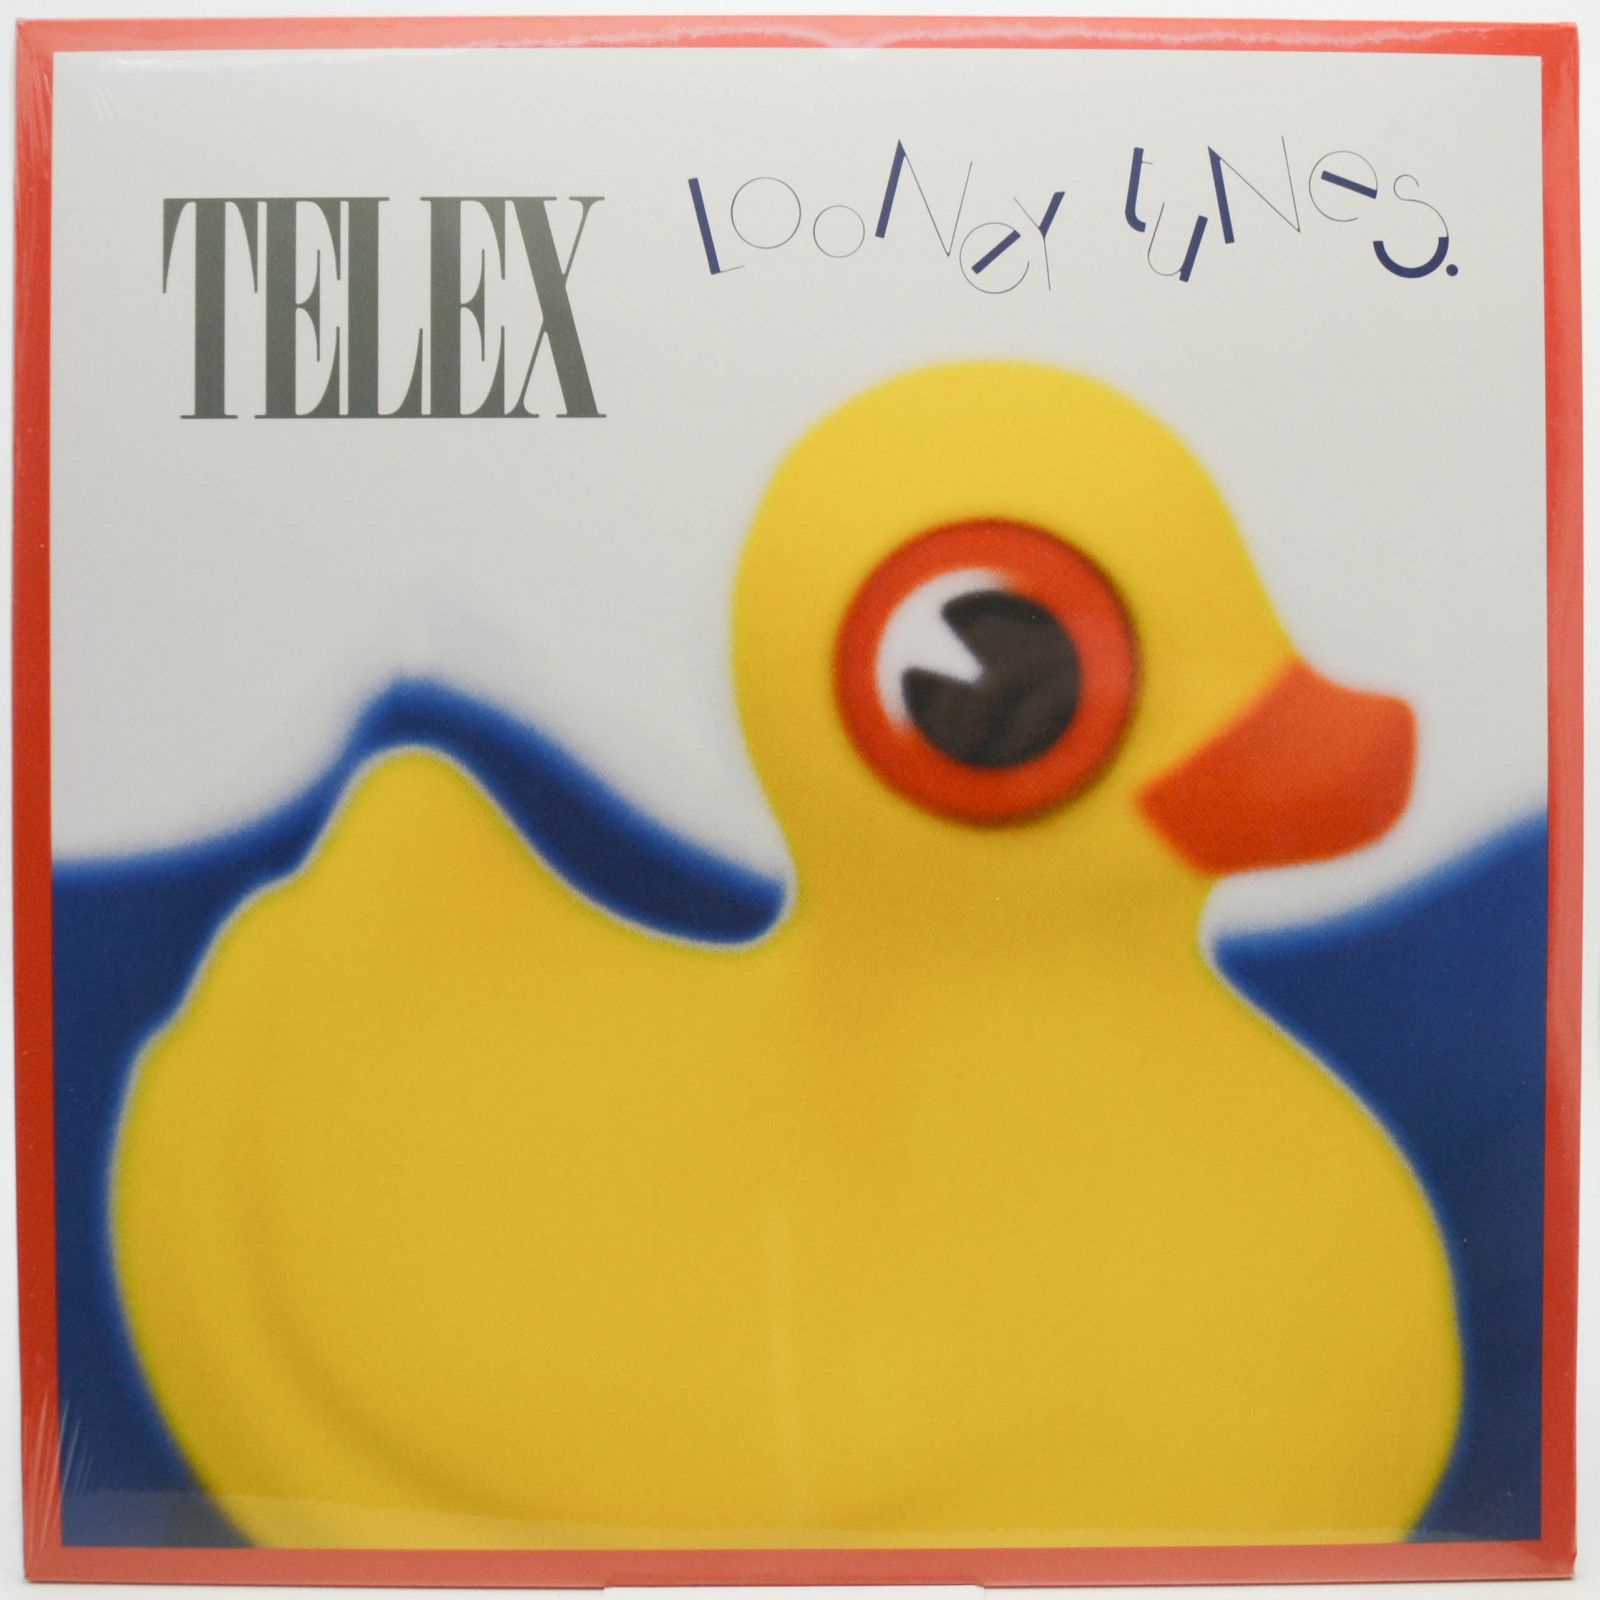 Telex — Looney Tunes, 1988